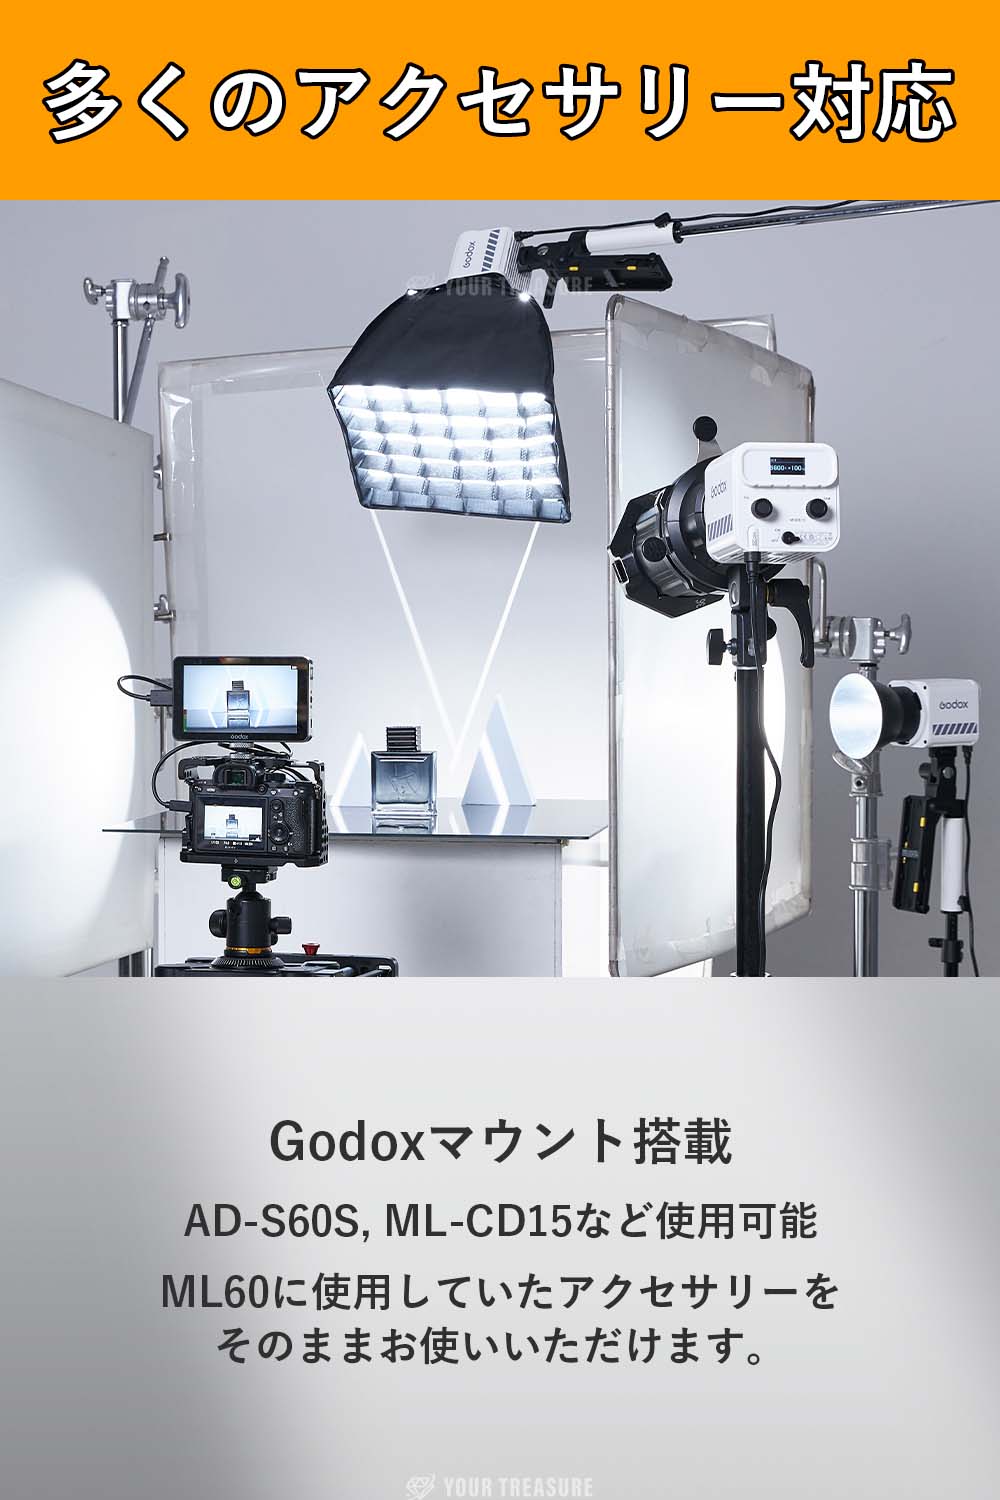 Godox ML60IIBI 70W LED ポータブル COB ビデオライト 2800-6500K 11FX 